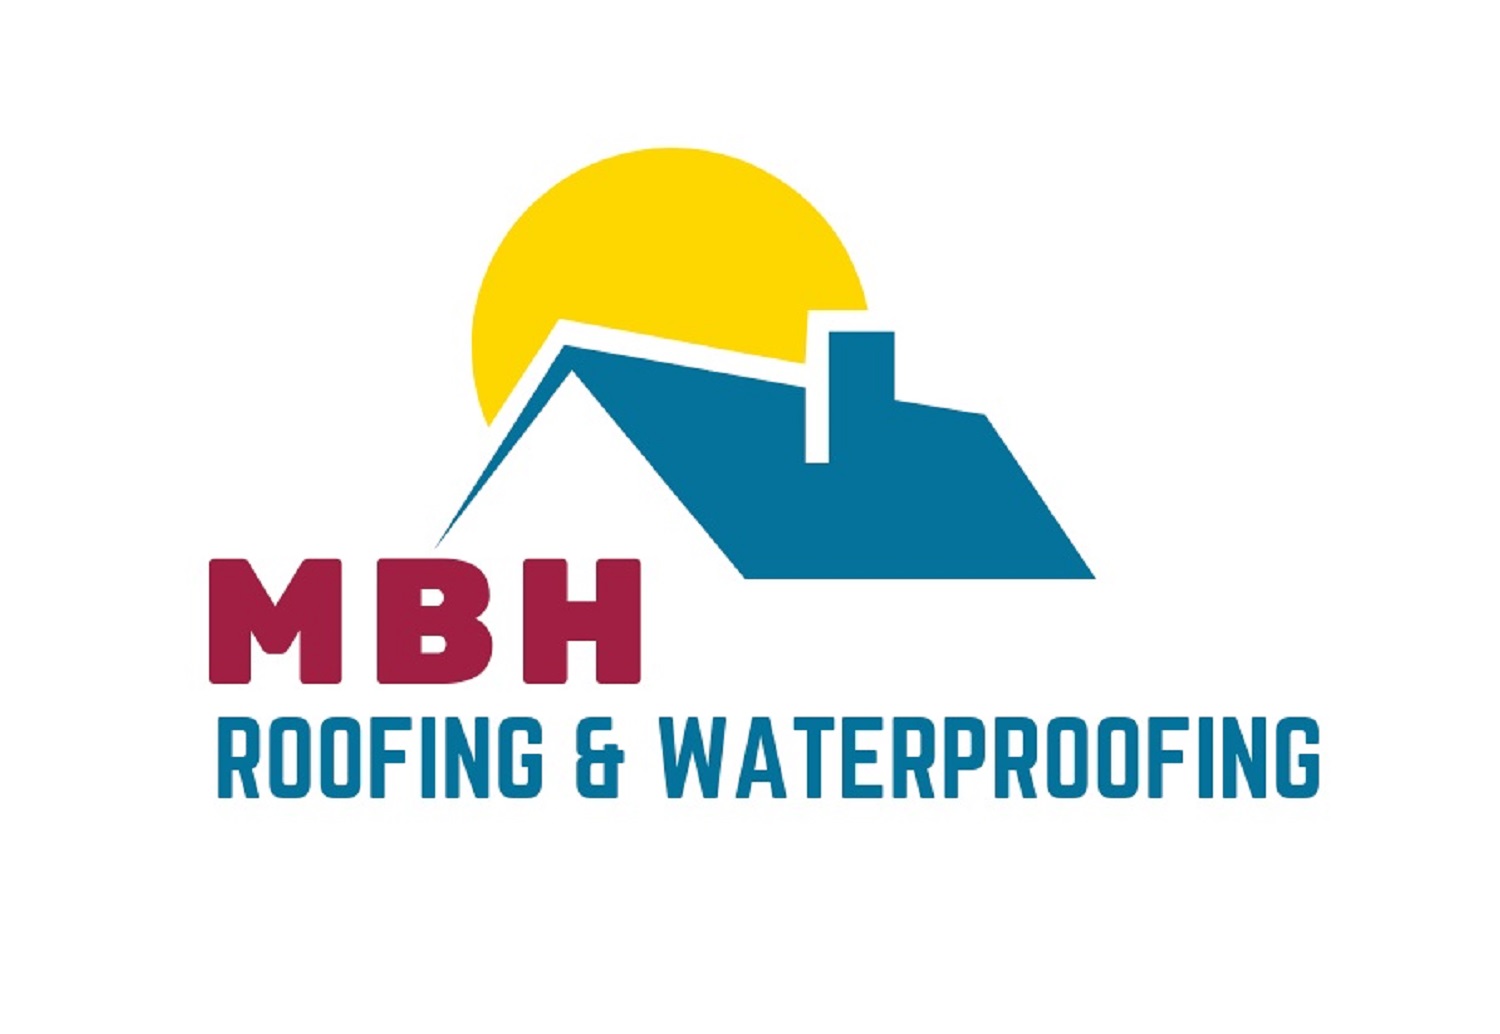 MBH Roofing & Waterproofing